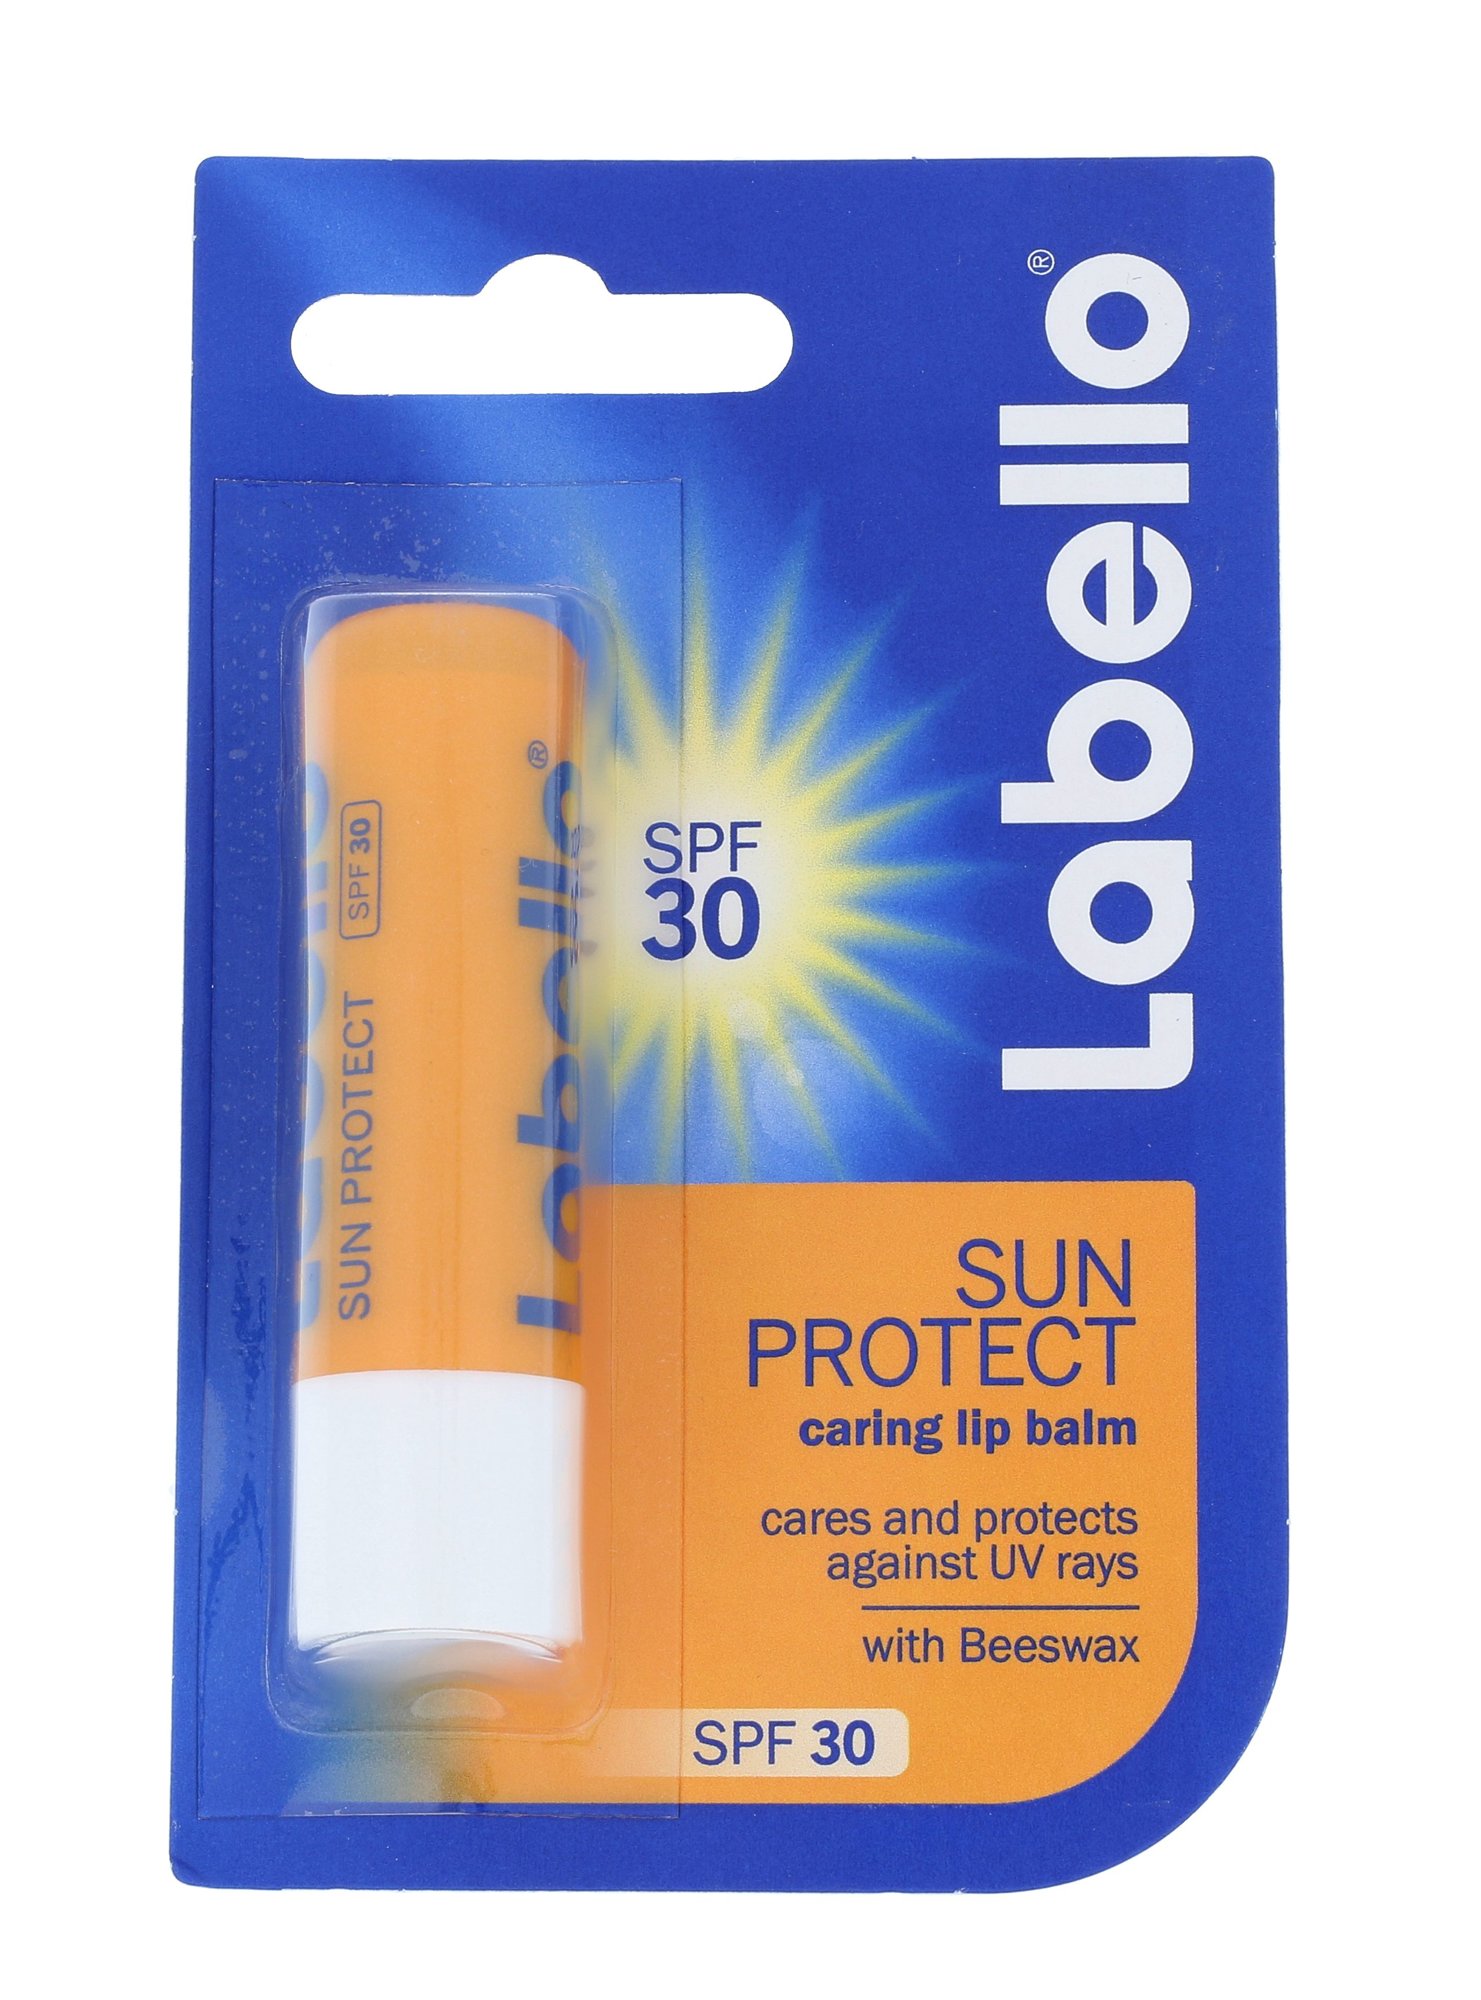 Labello Sun Protect SPF30 Waterproof